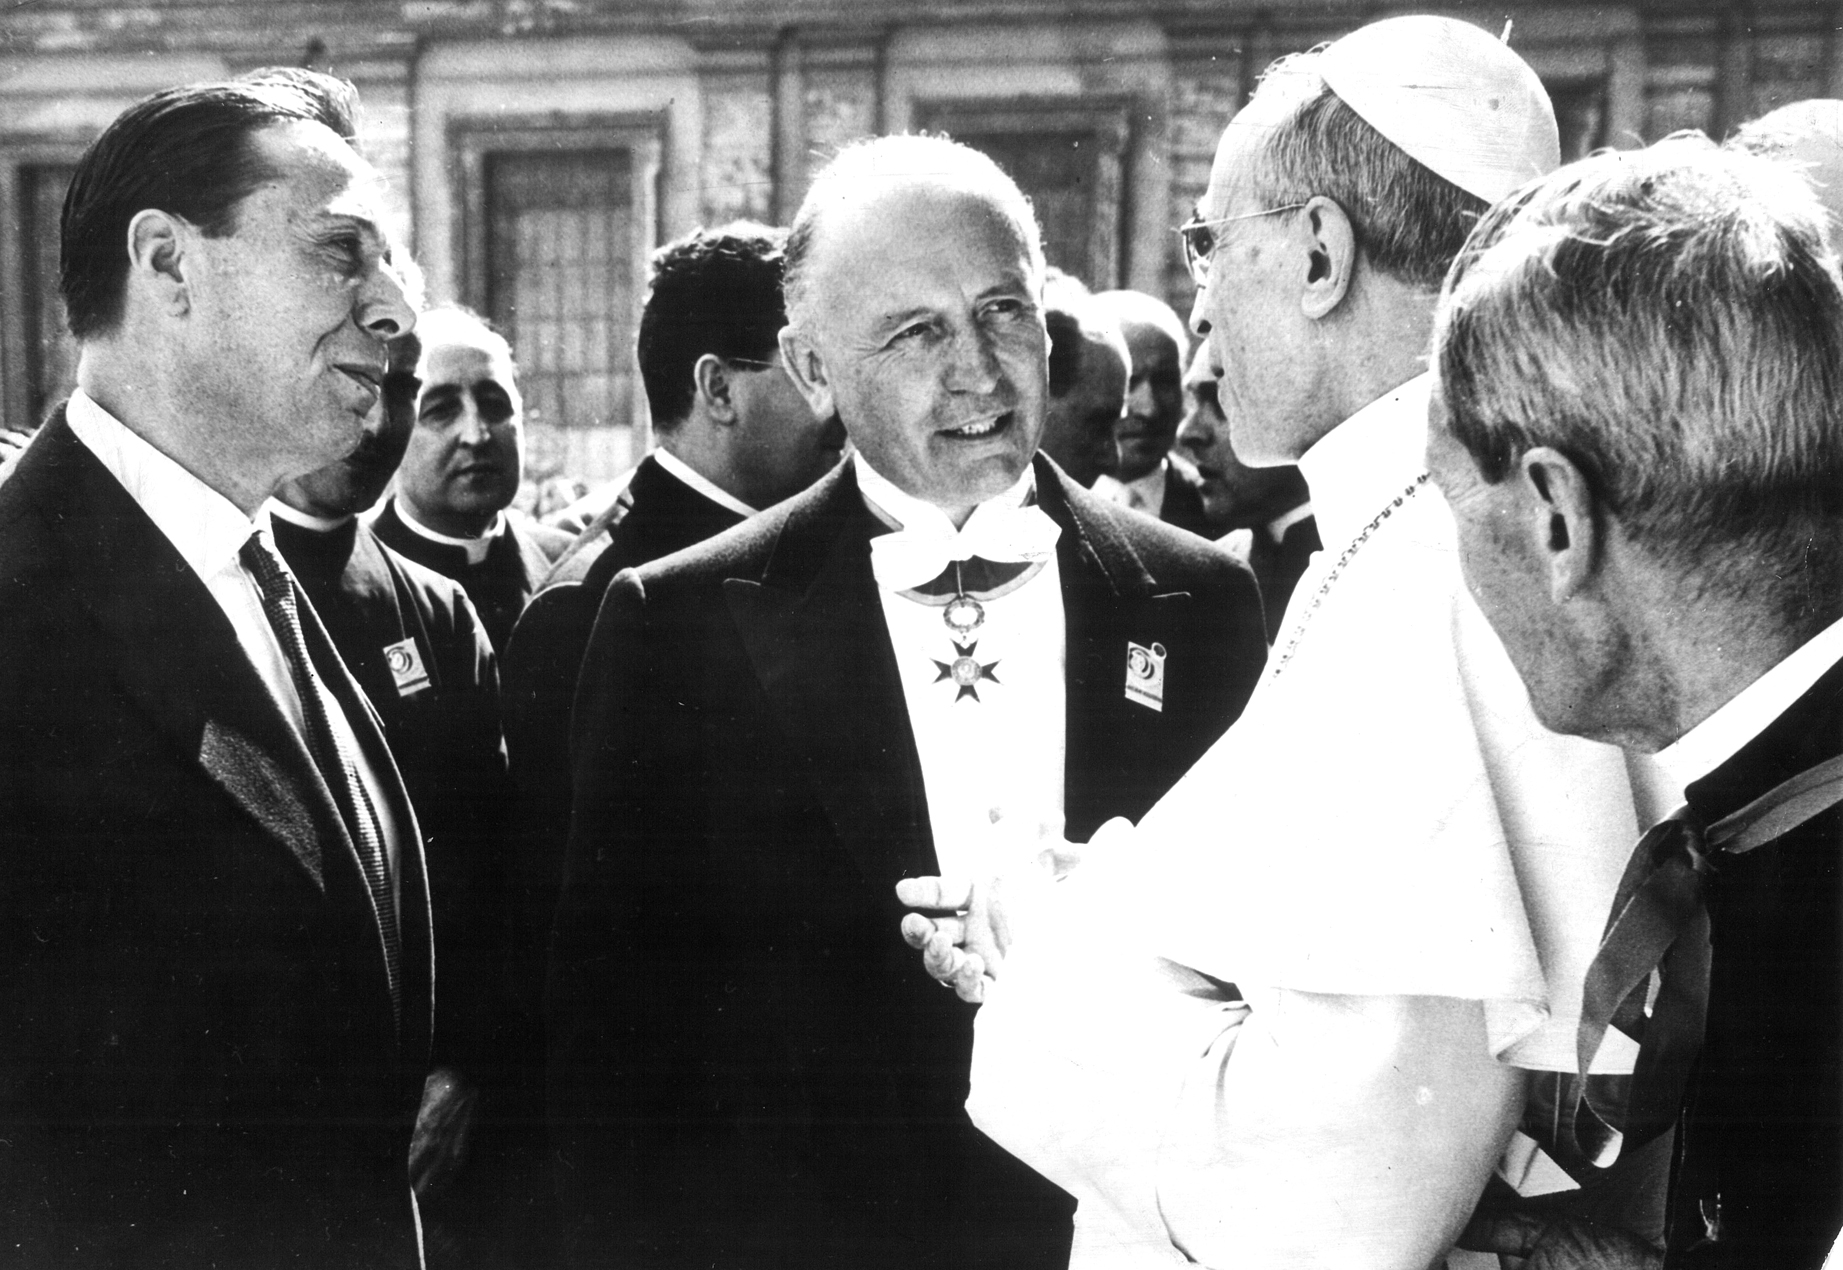 Tre uomini in primo piano, sulla destra il papa vestito di bianco, al centro un uomo con una medaglia al petto, sulla sinistra un altro signore 